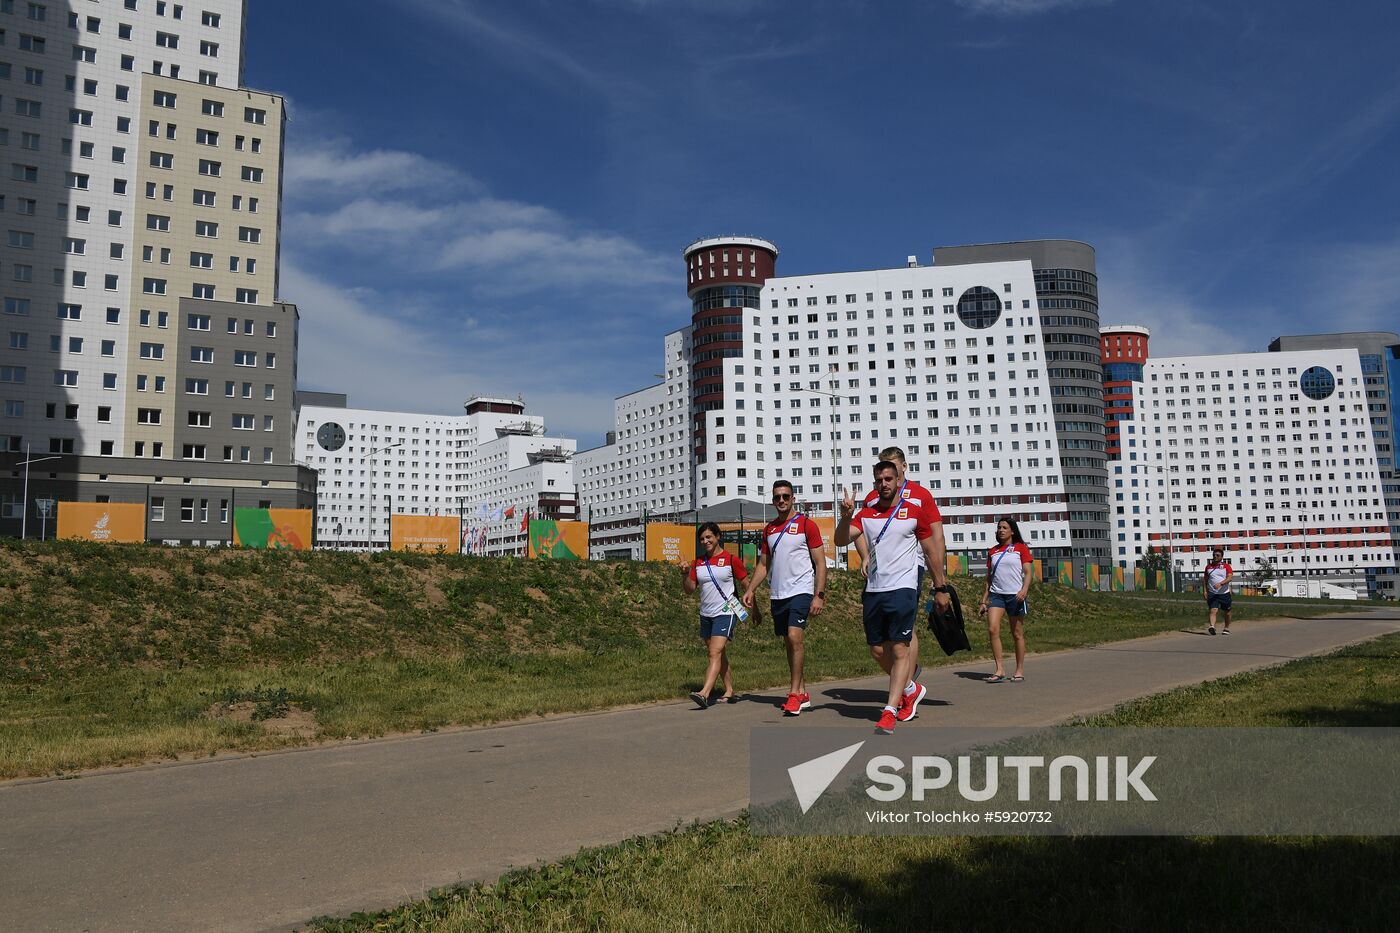 Belarus European Games Preparations